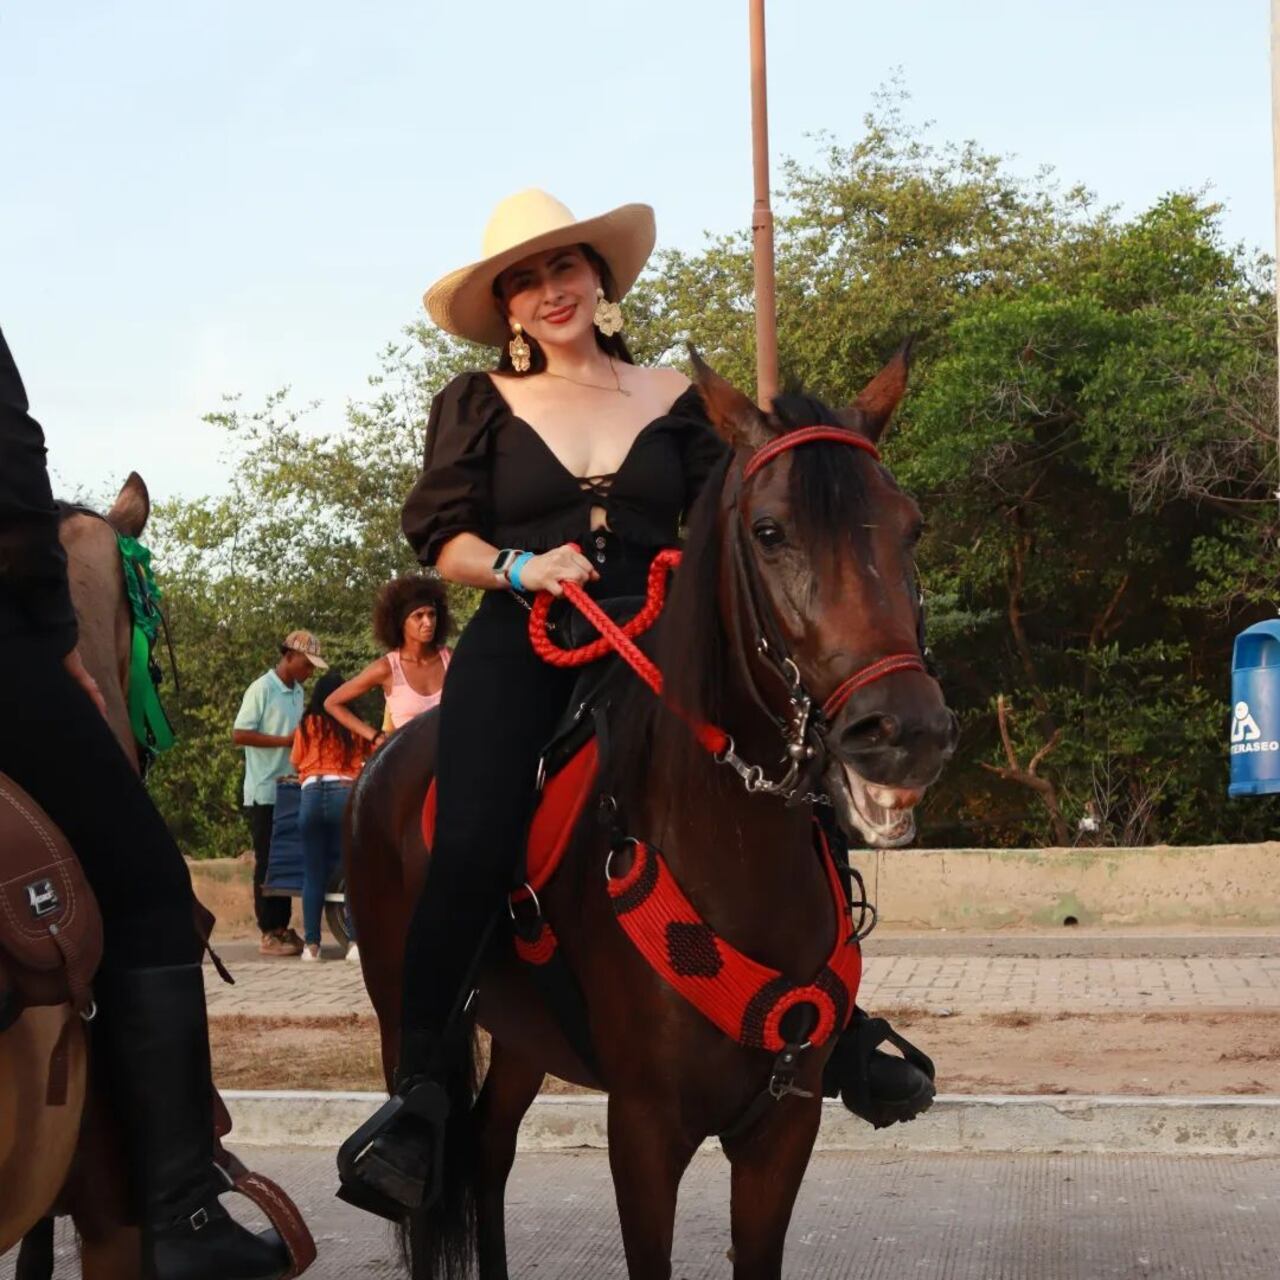 La cabalgata es uno de los eventos más tradicionales del Festival.